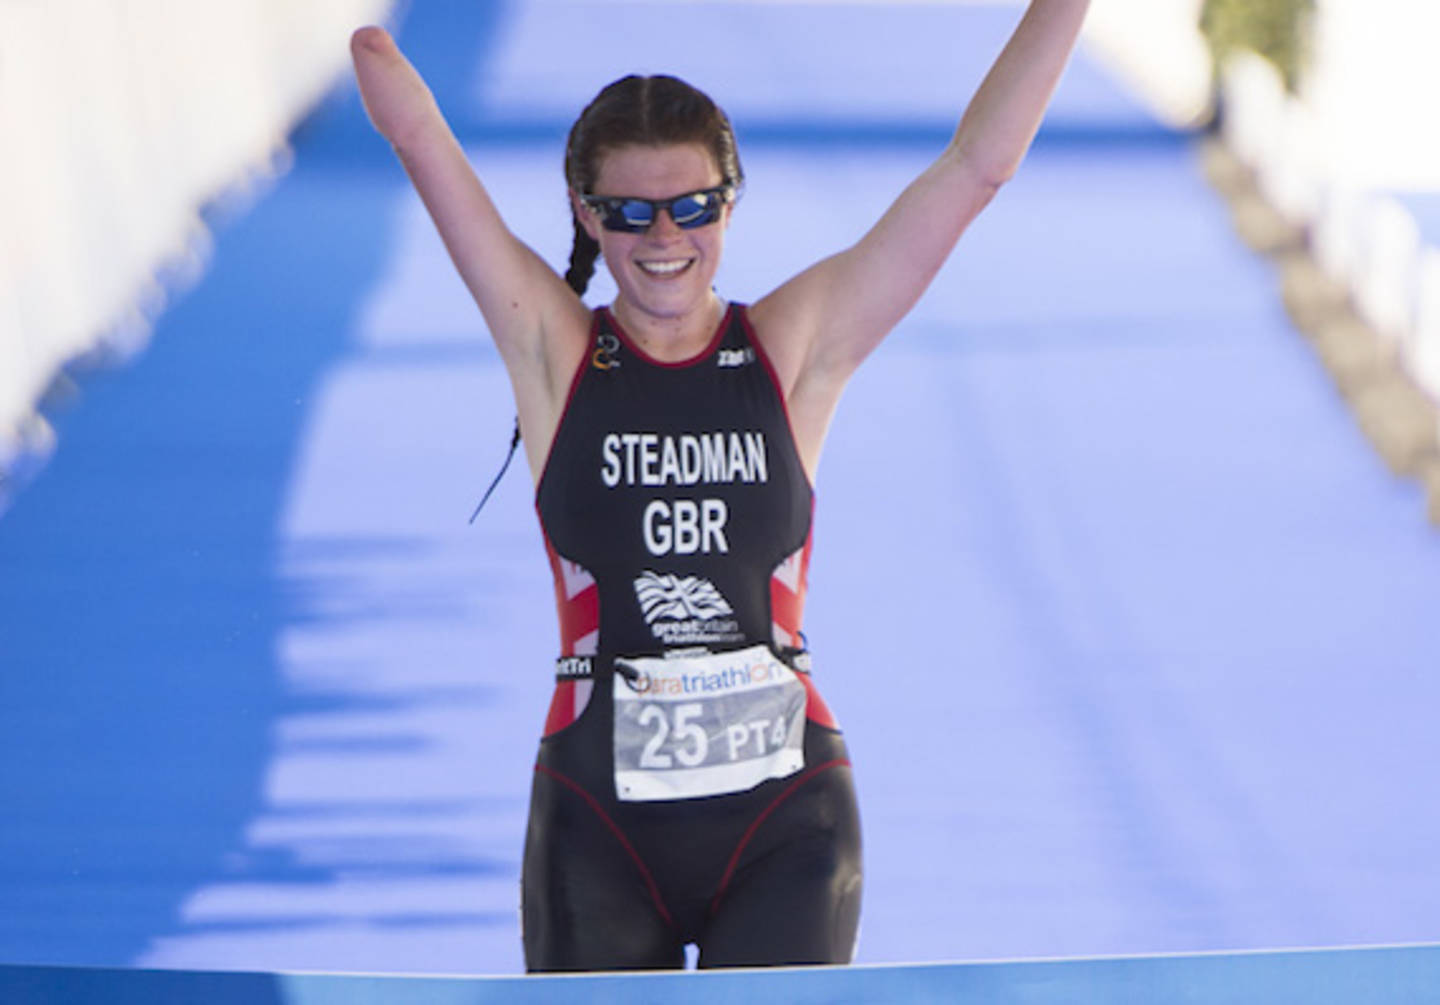 Lauren Steadman competes in a triathlon